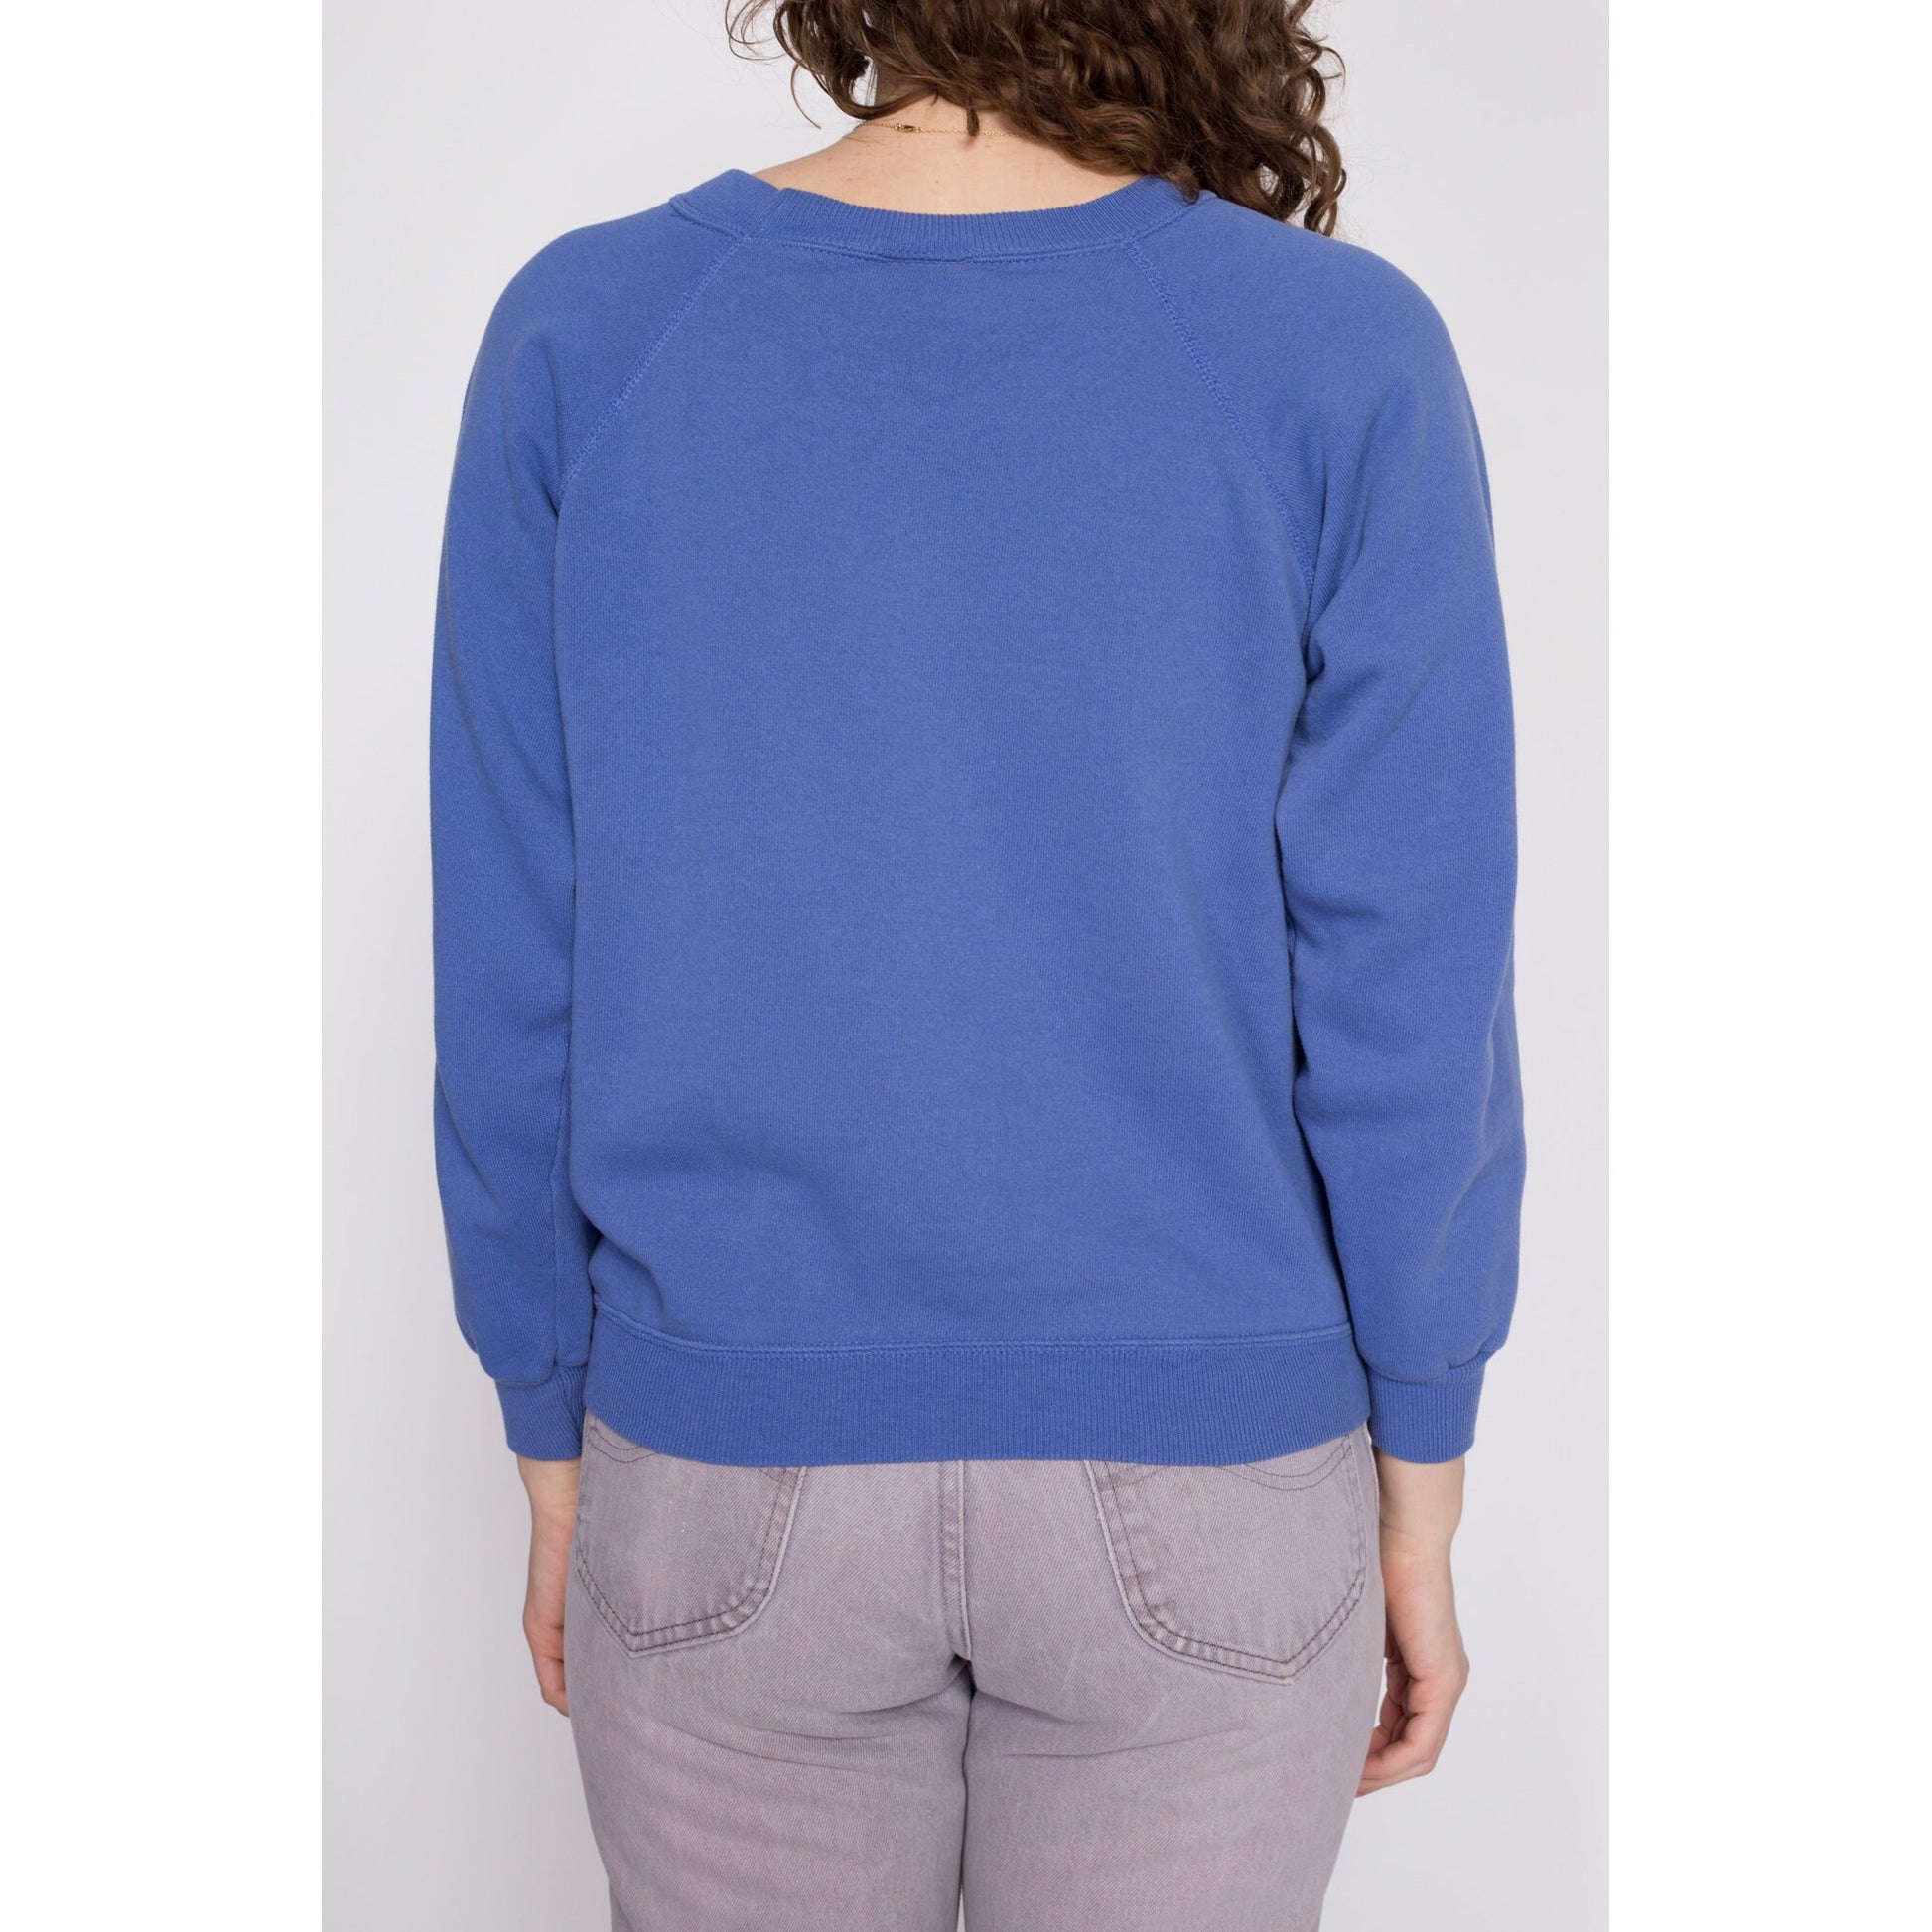 90s Periwinkle Raglan Sleeve Sweatshirt - Medium | Vintage Blank Plain Slouchy Crew Neck Pullover